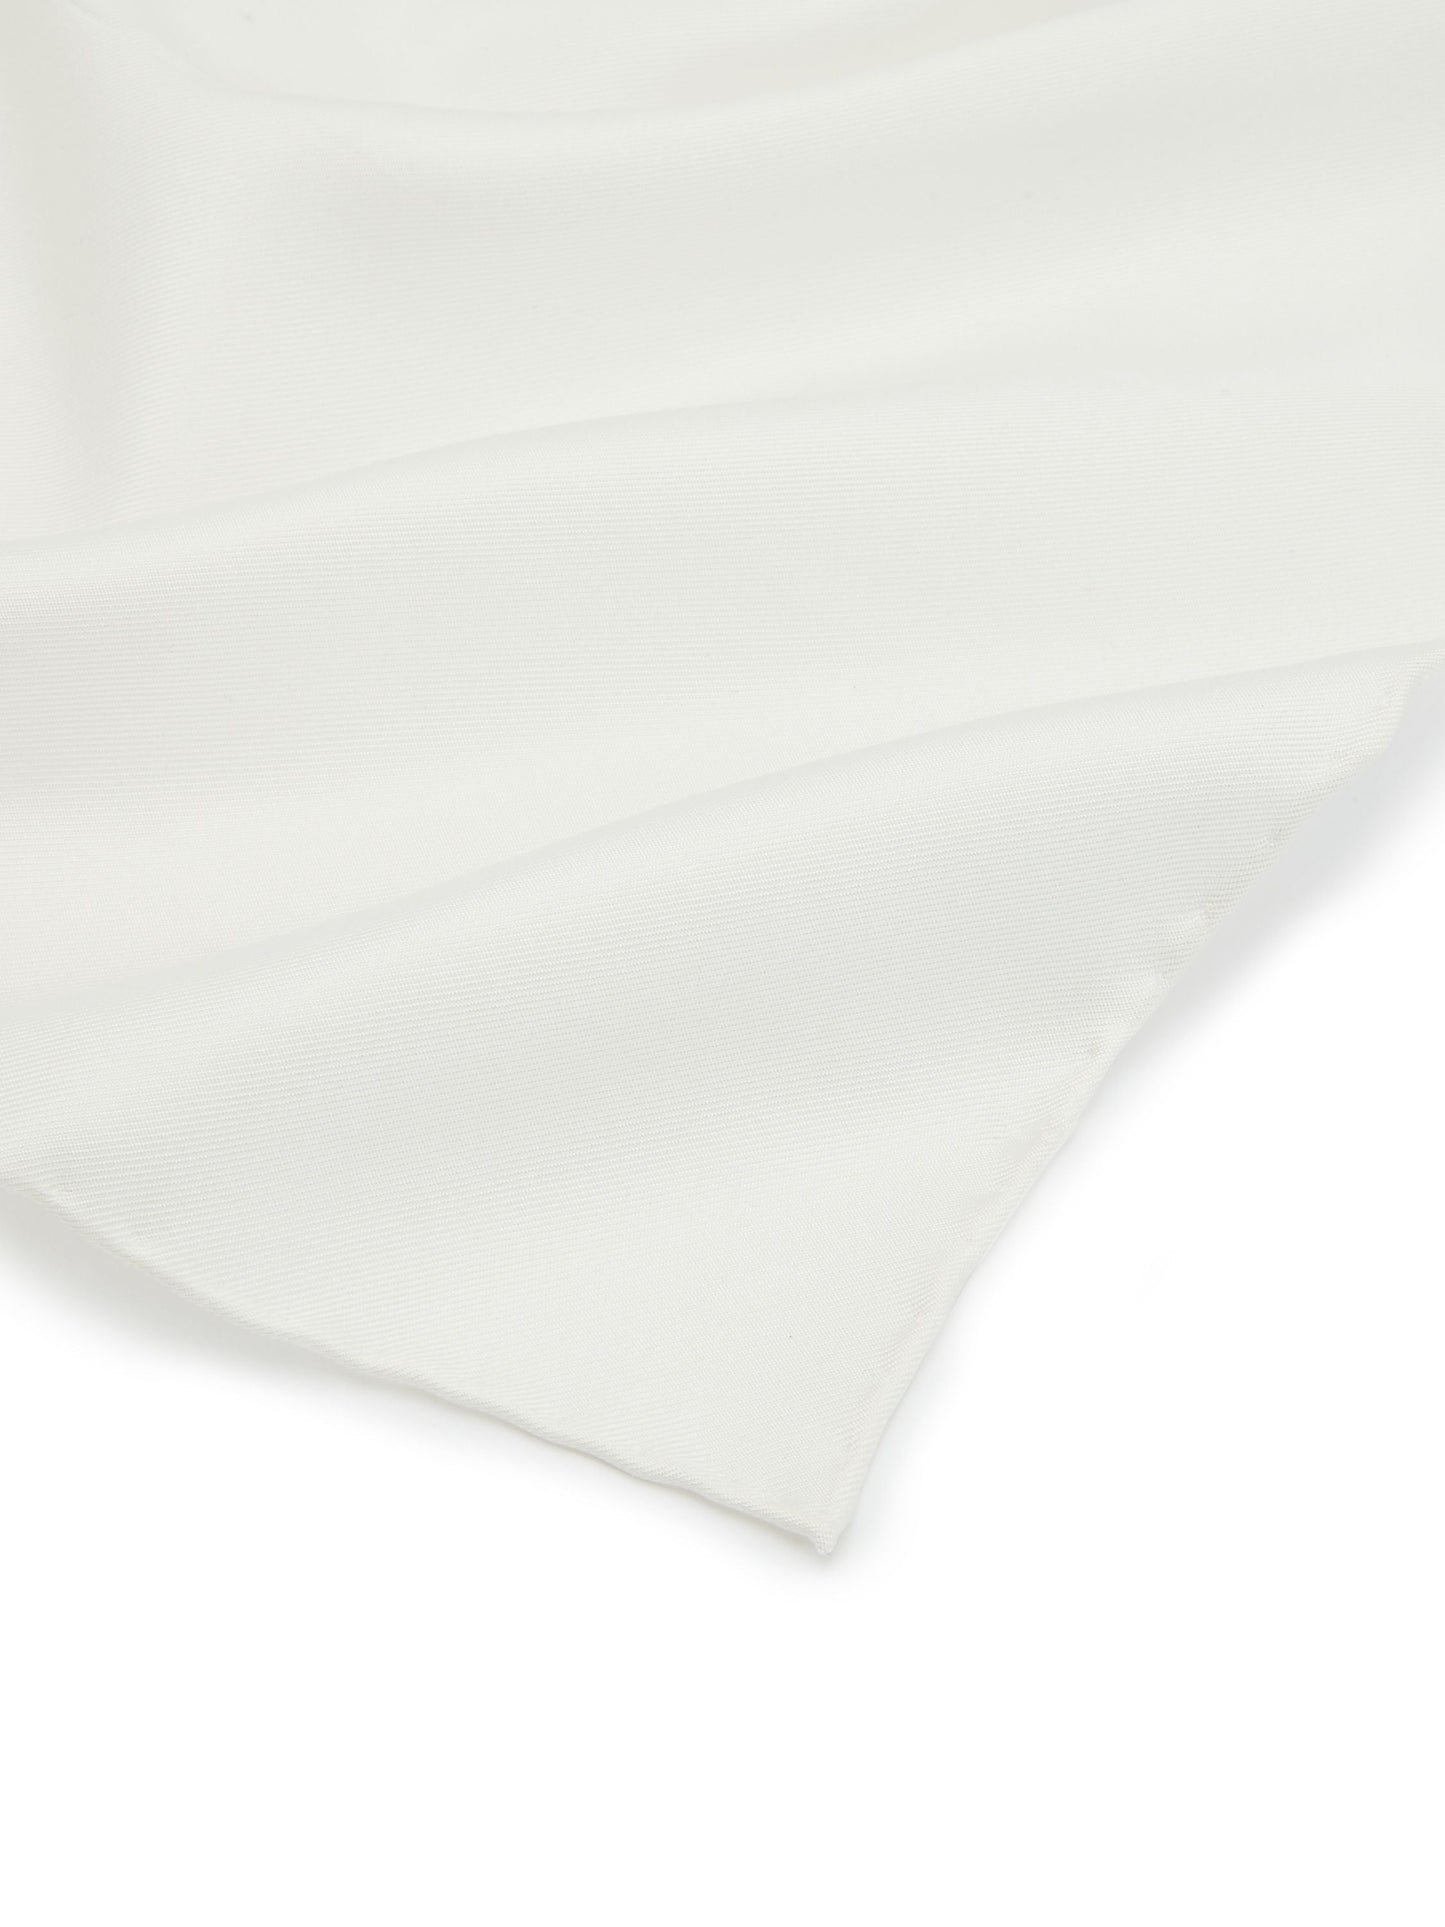 Hand Finished Silk Handkerchief - White